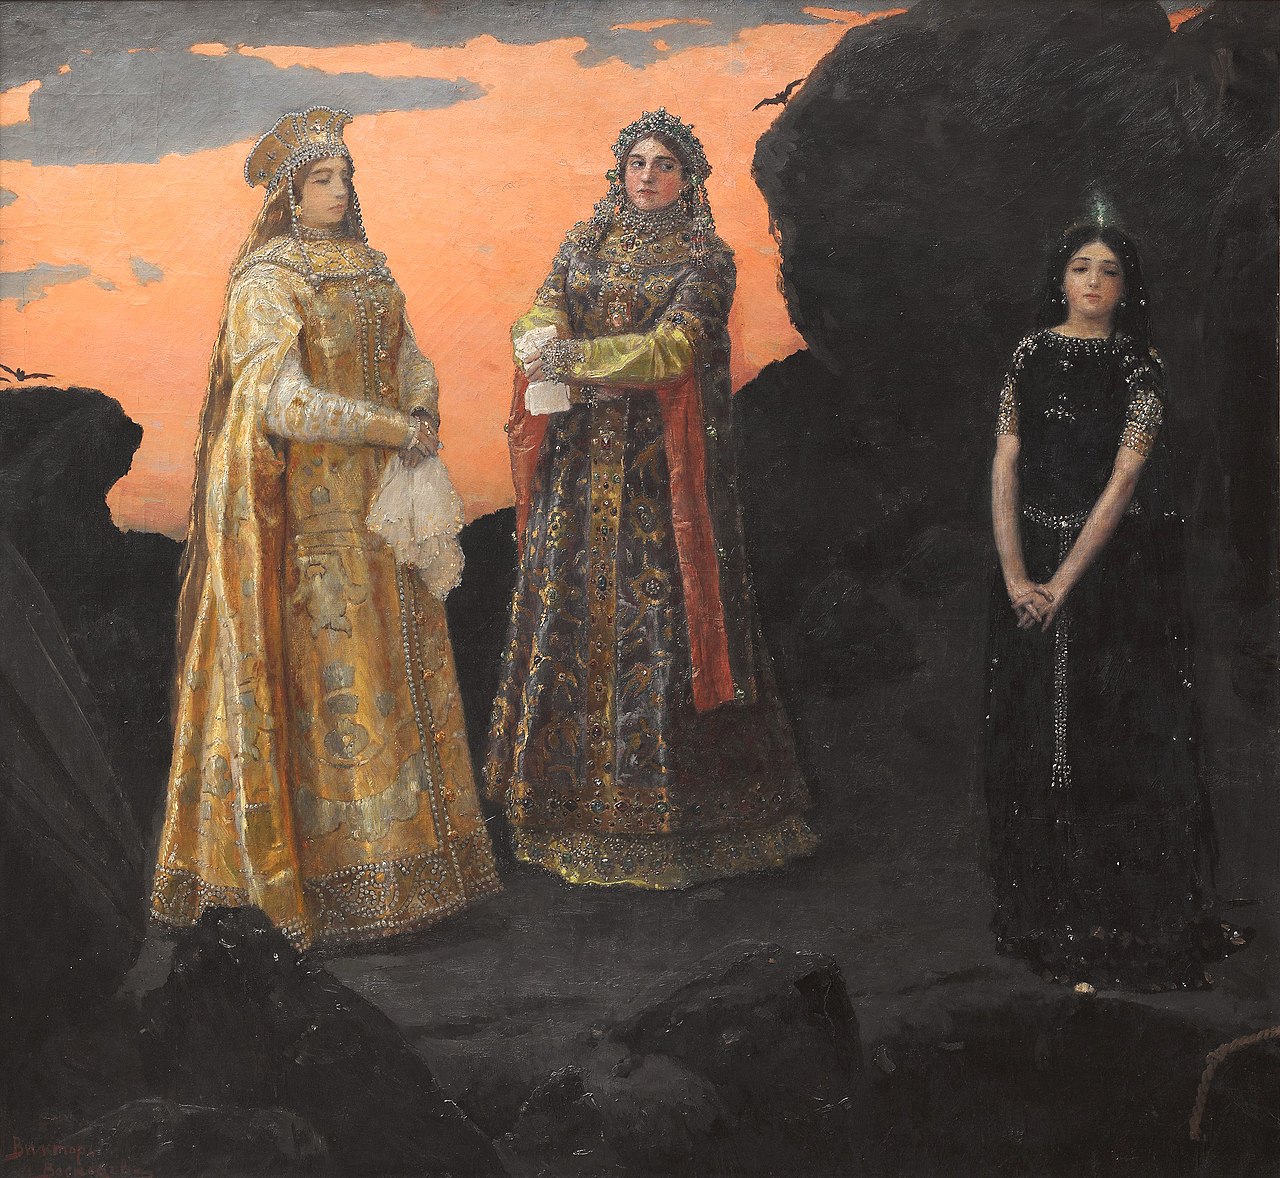 Виктор Васнецов. Три царевны подземного царства. 1881